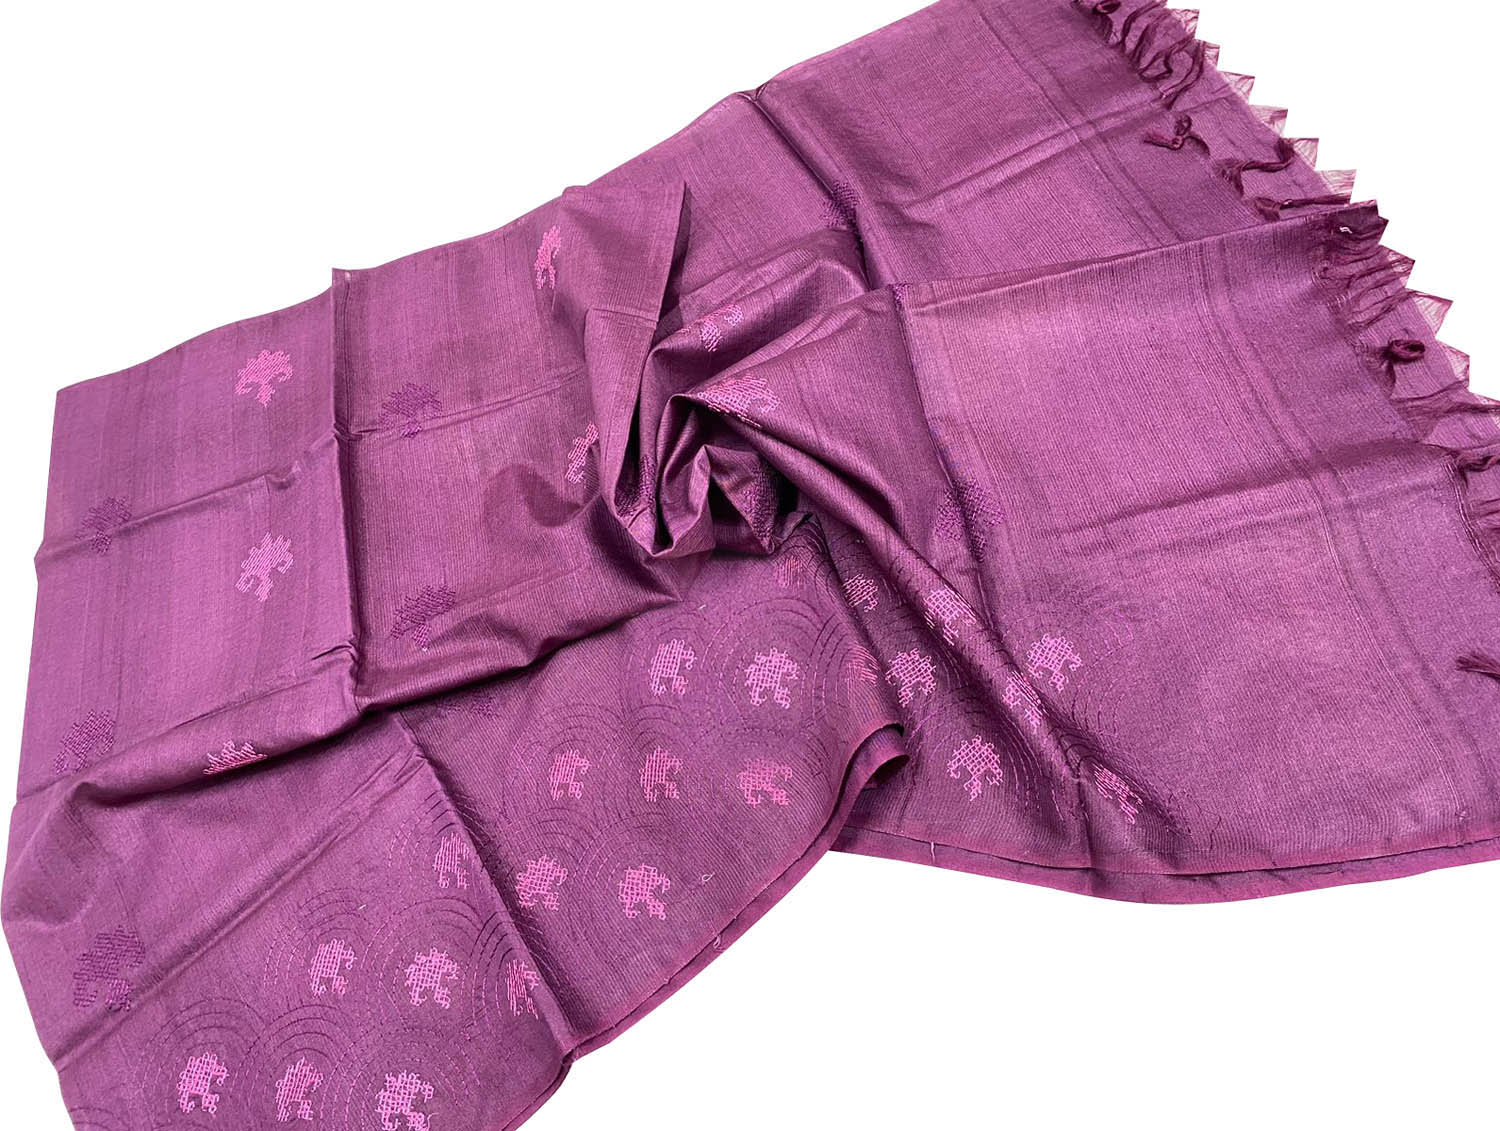 Shop Pink Bhagalpur Tussar Silk Dupatta - Elegant & Luxurious - Luxurion World